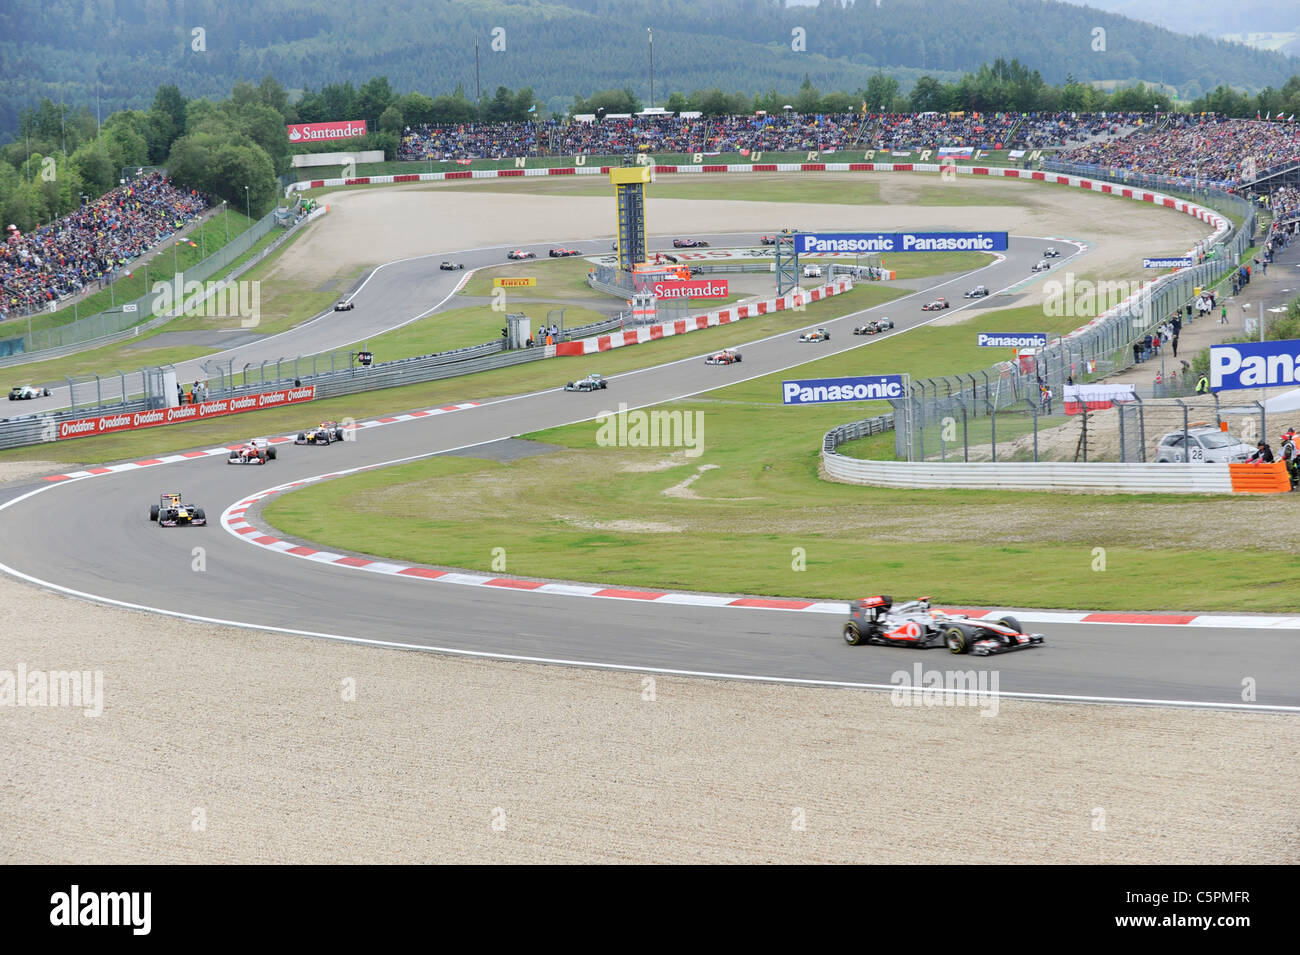 Les voitures de formule 1 Course à travers la courbe Dunlop au Nürburgring au cours de l'Allemand Grand Prix de Formule 1 2011 Banque D'Images